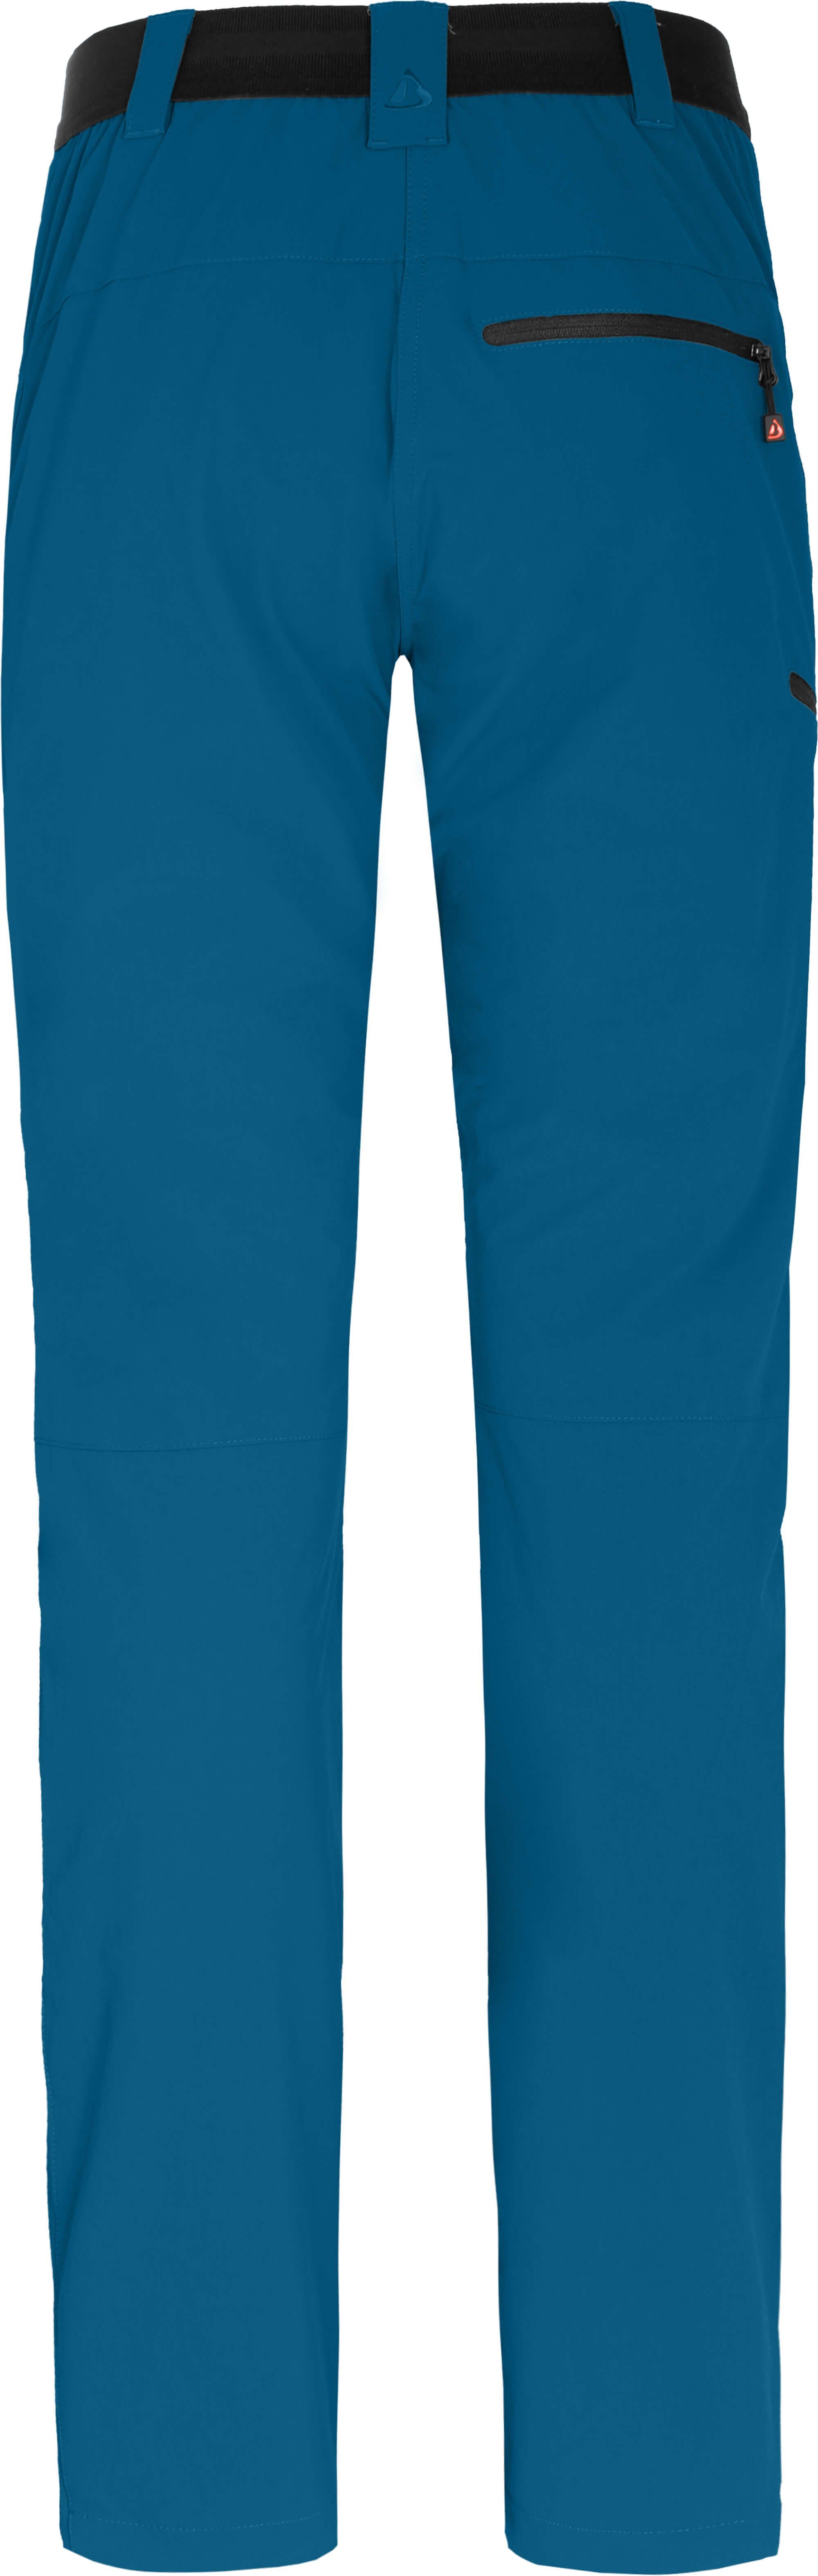 Langgrößen, Bergson Saphir Outdoorhose RITAMÄKI warm COMFORT gefüttert, Damen elastisch, blau Winter-Wanderhose,